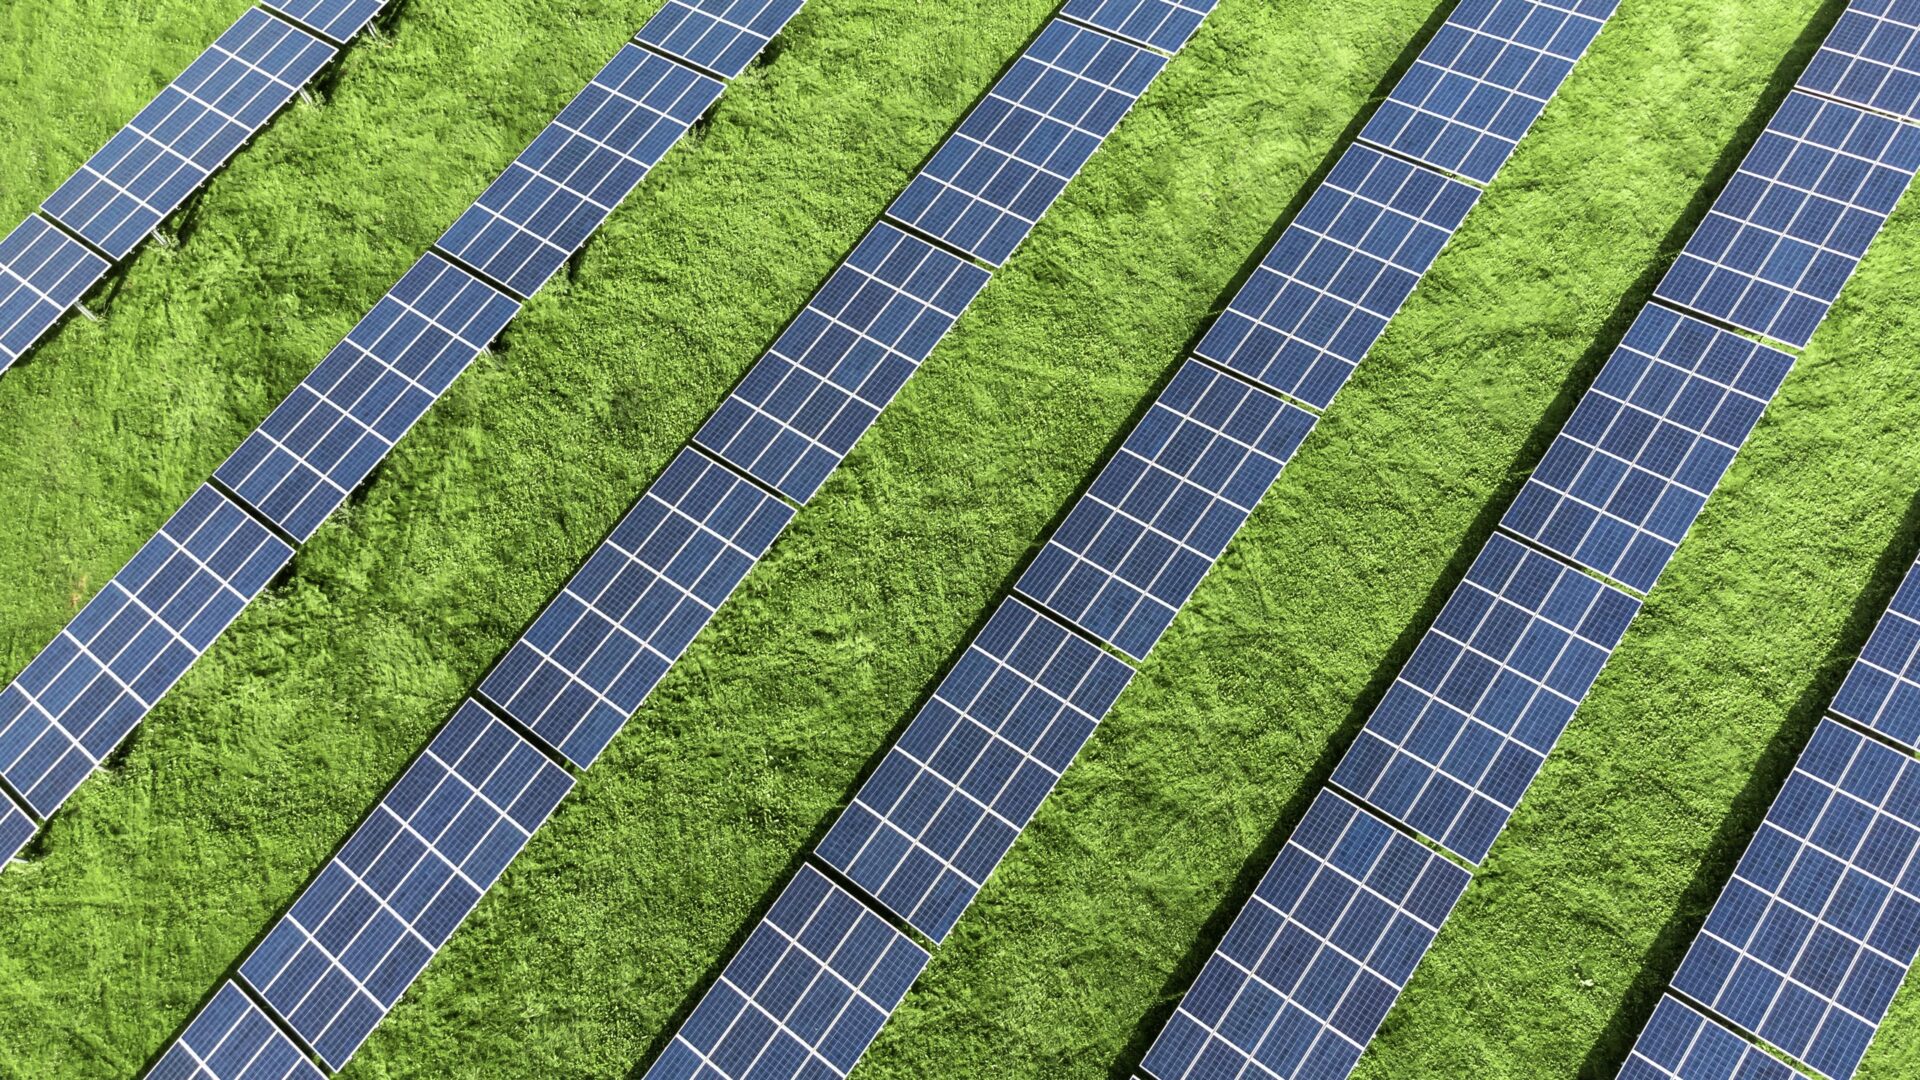 Headerbild zum Blogartikel "Wie Process Mining Ihr Unternehmen nachhaltiger macht", zeigt Solaranlage auf grüner Wiese .